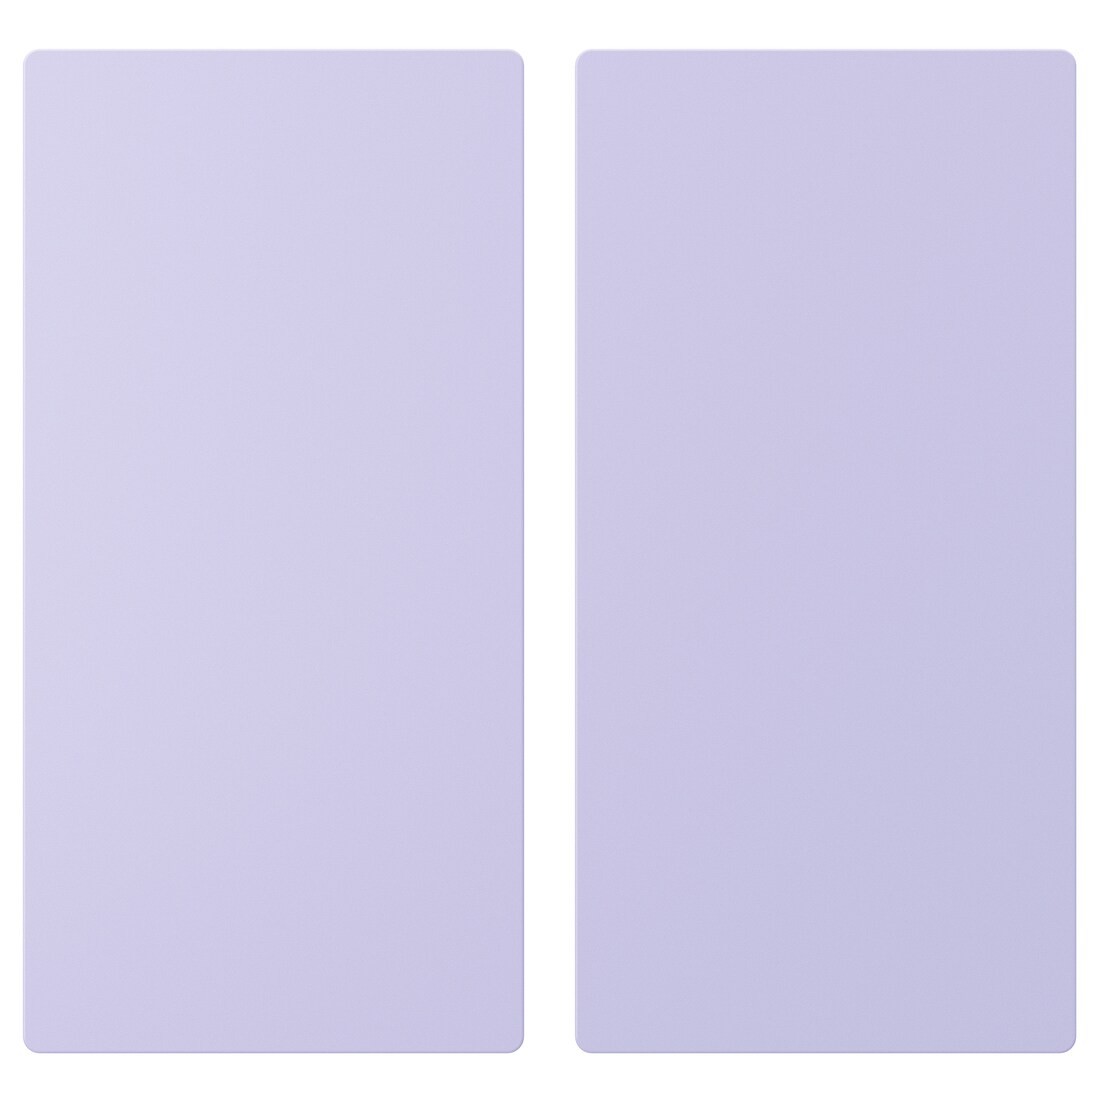 SMÅSTAD Двері, блідо-фіолетовий, 30x60 см